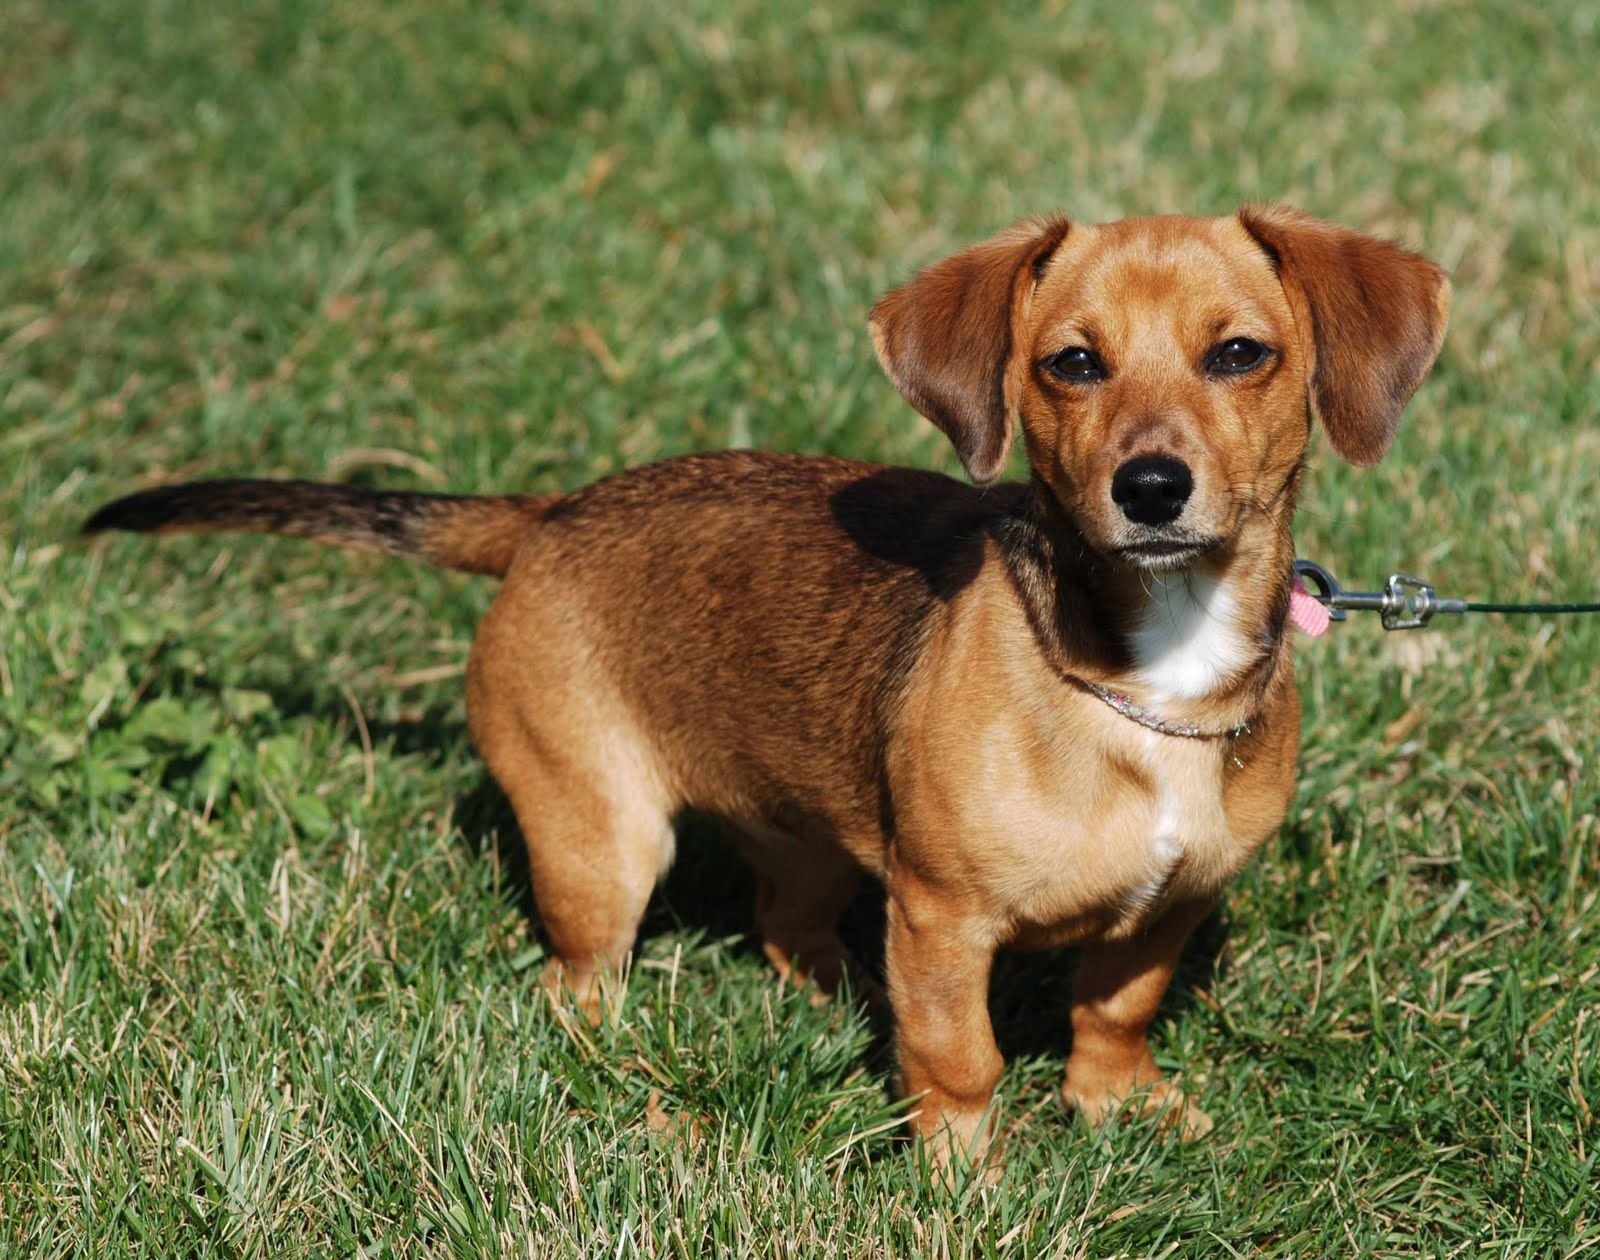 6 вариантов метисов собак породы таксы и как отличить породистого щенка